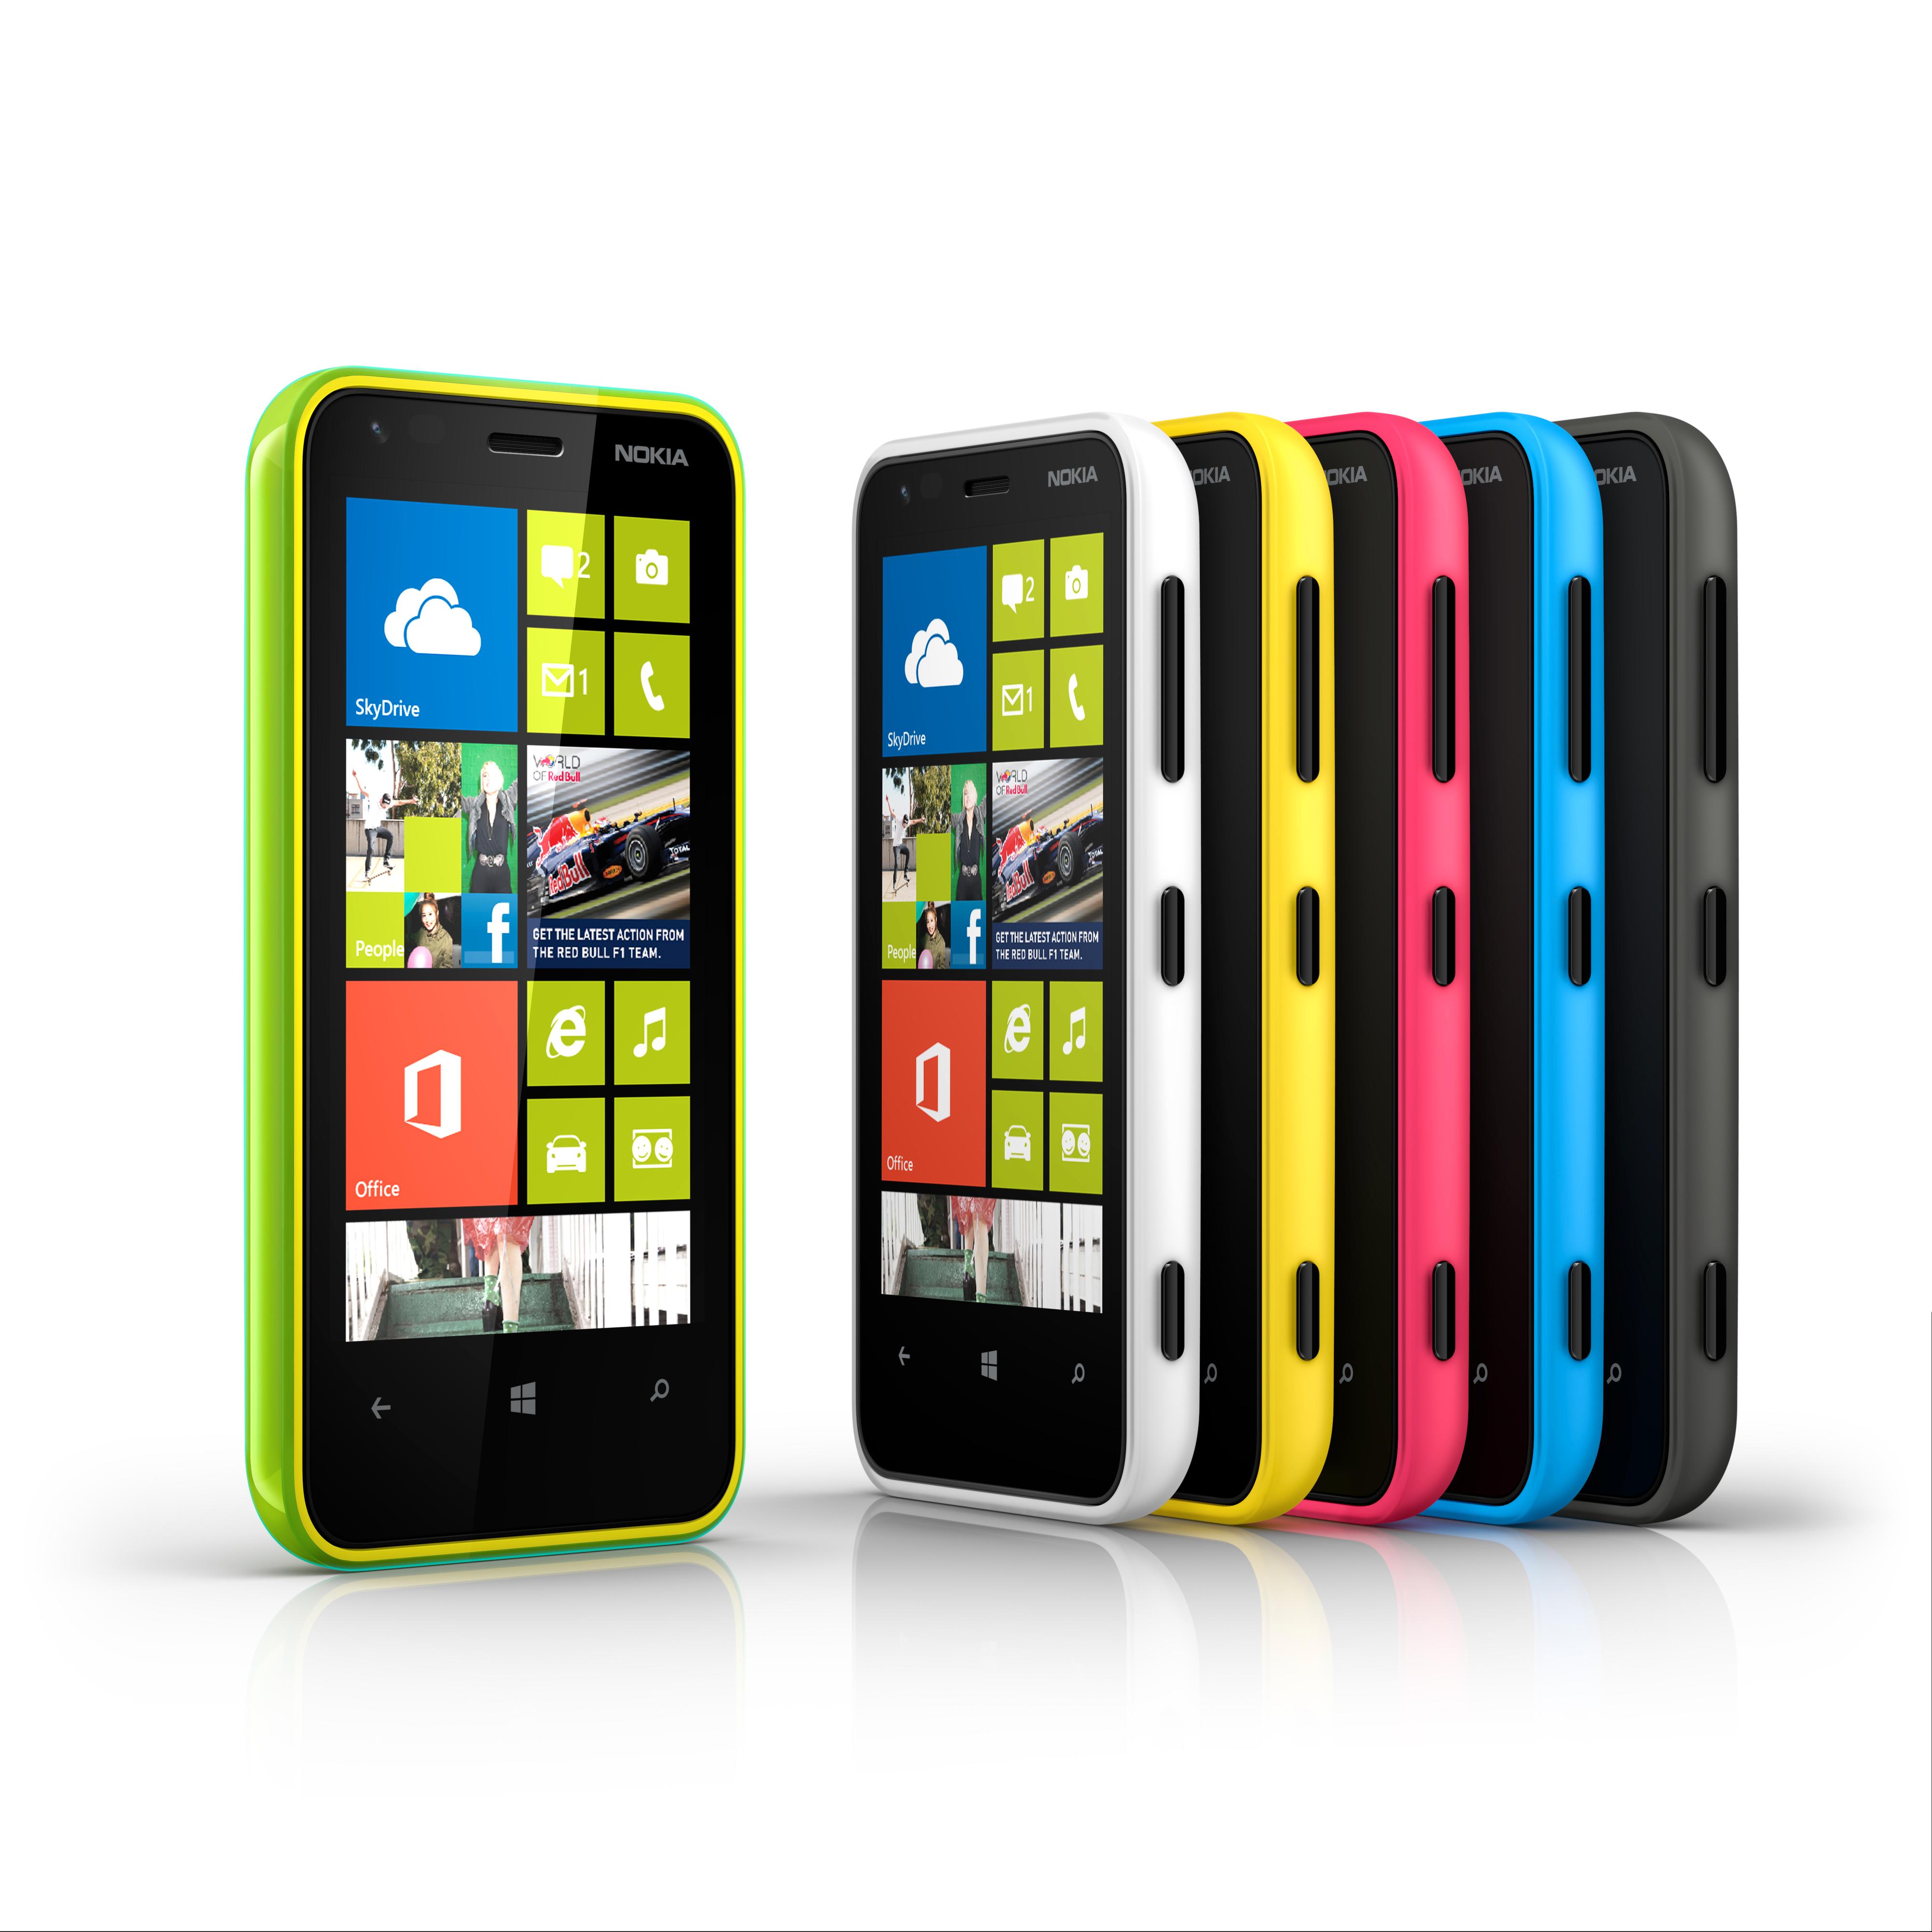 Nokia Lumia 620 kommer i flere farger.Foto: Nokia